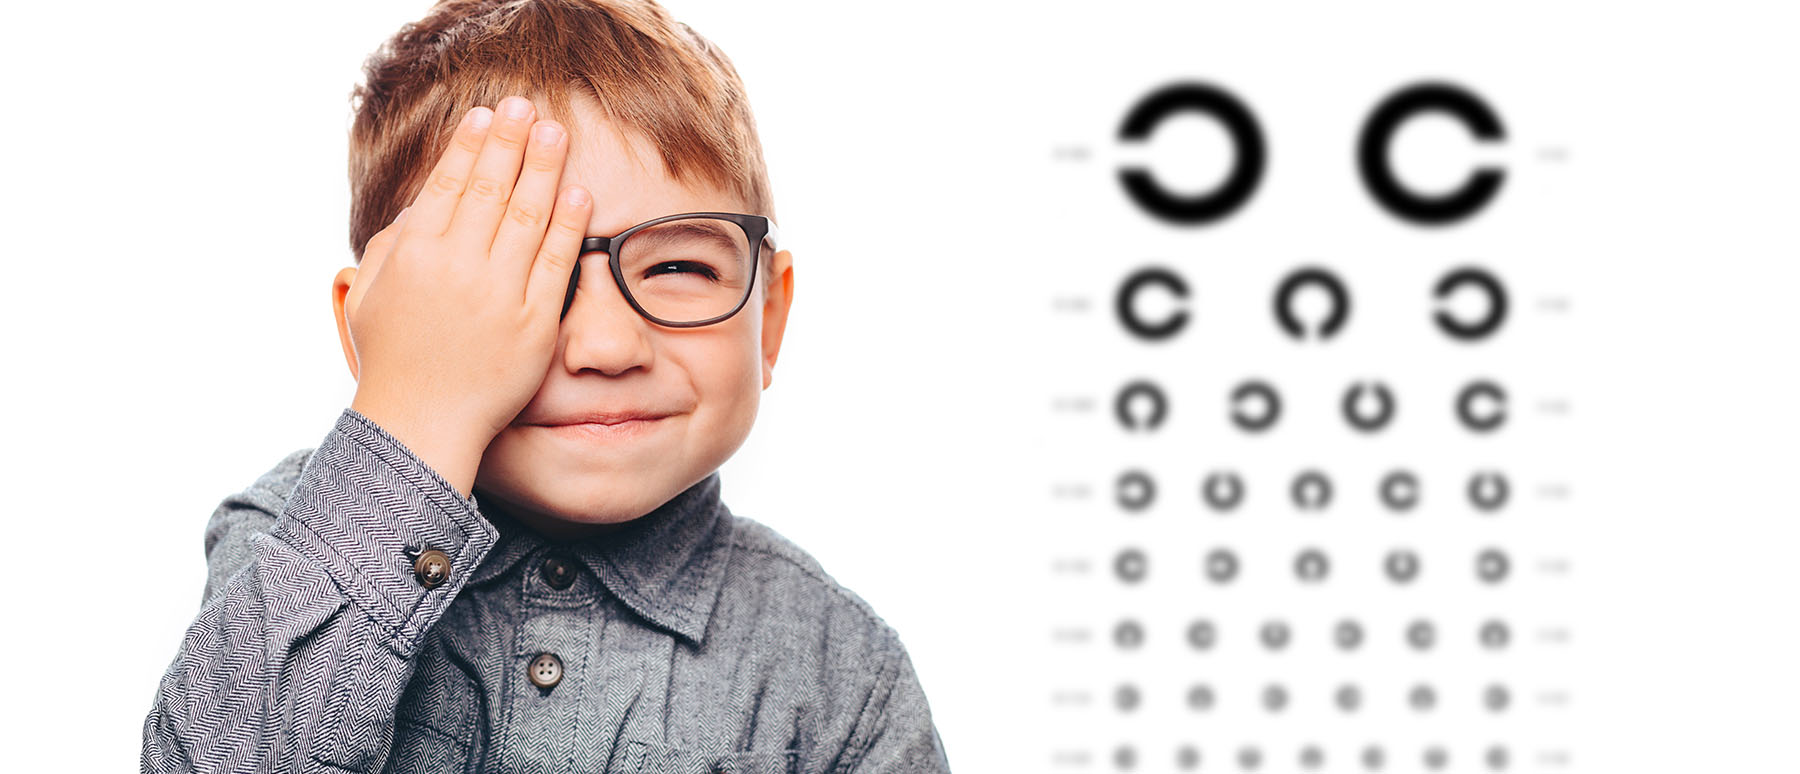 Kind mit Brille neben einer Tafel, um bei der Vorsorge in der Sehschule der Augenpartner auf Sehstörungen zu untersuchen 